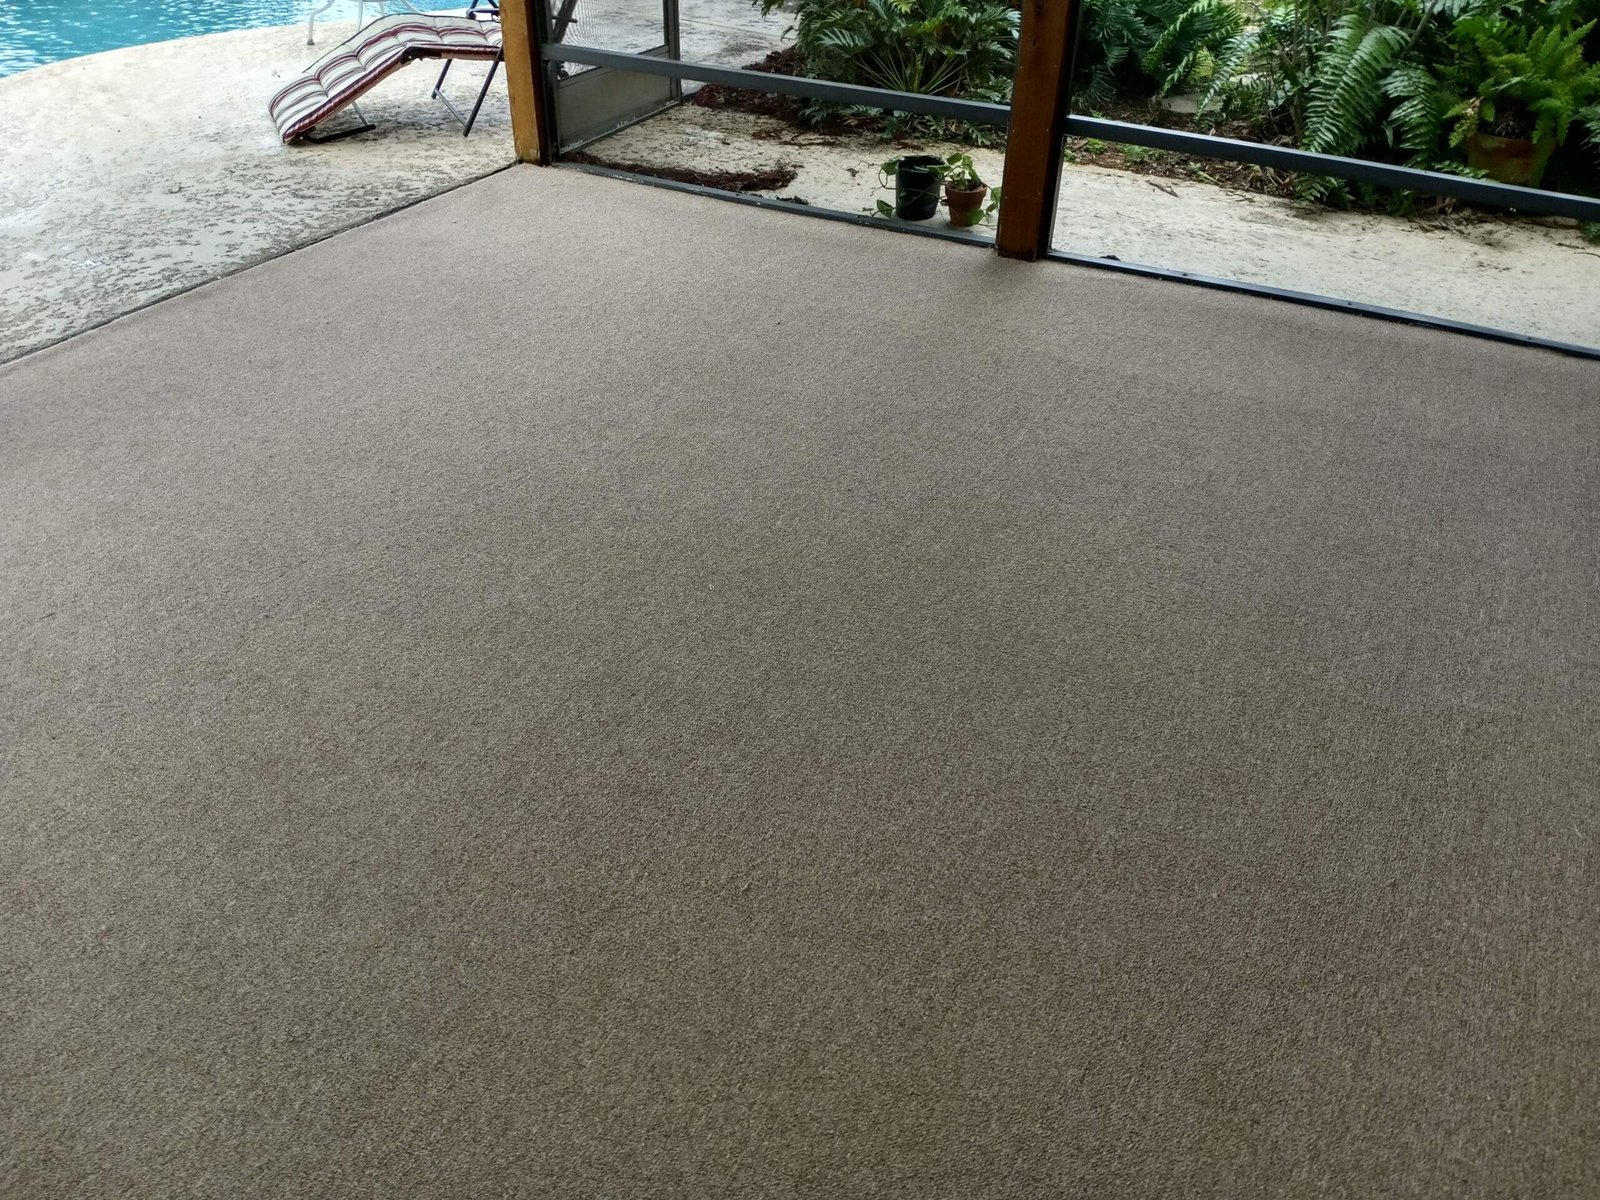 indoor outdoor carpet